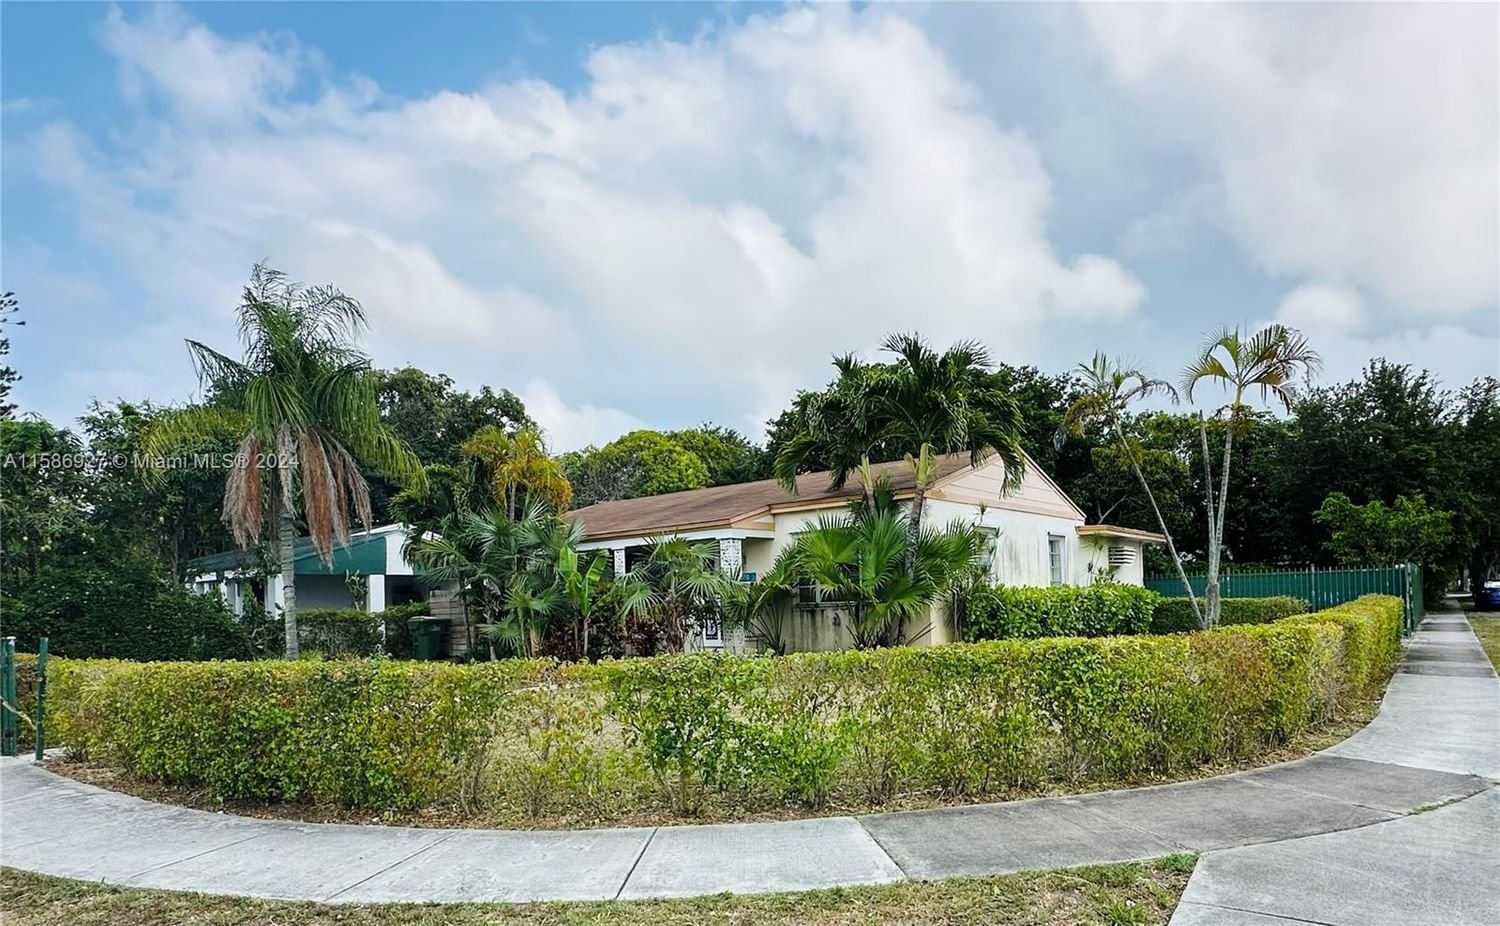 Real estate property located at 1300 134th St, Miami-Dade County, LEROB SUB, North Miami, FL